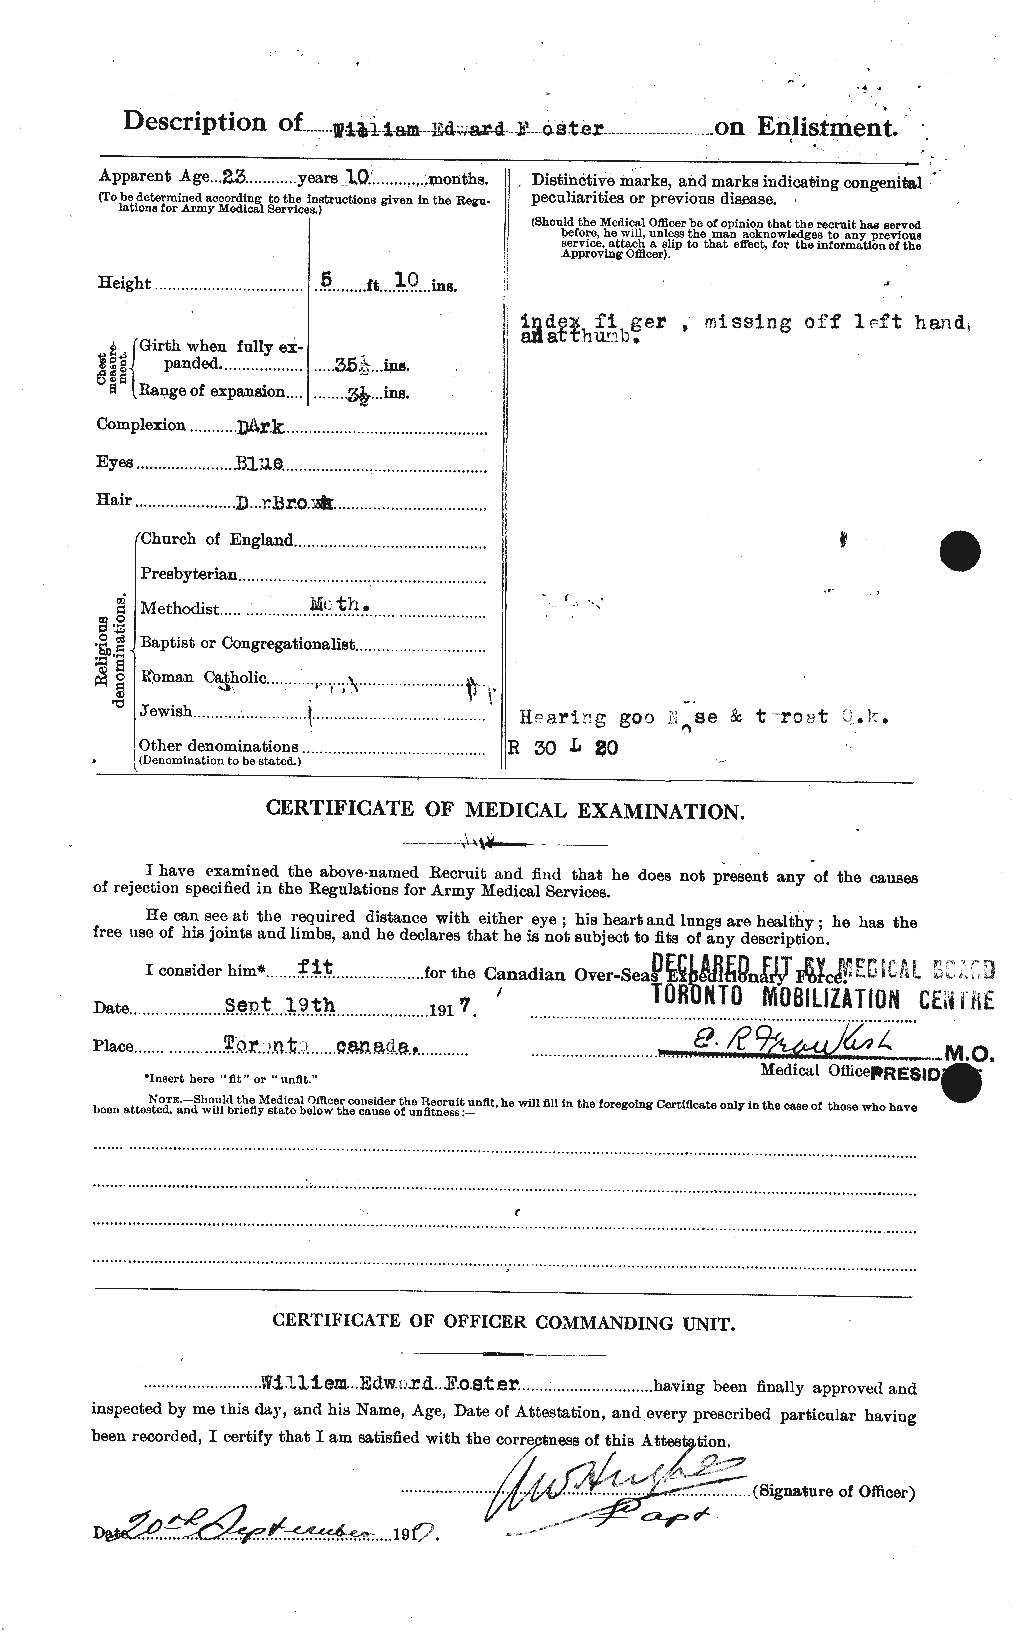 Dossiers du Personnel de la Première Guerre mondiale - CEC 328738b